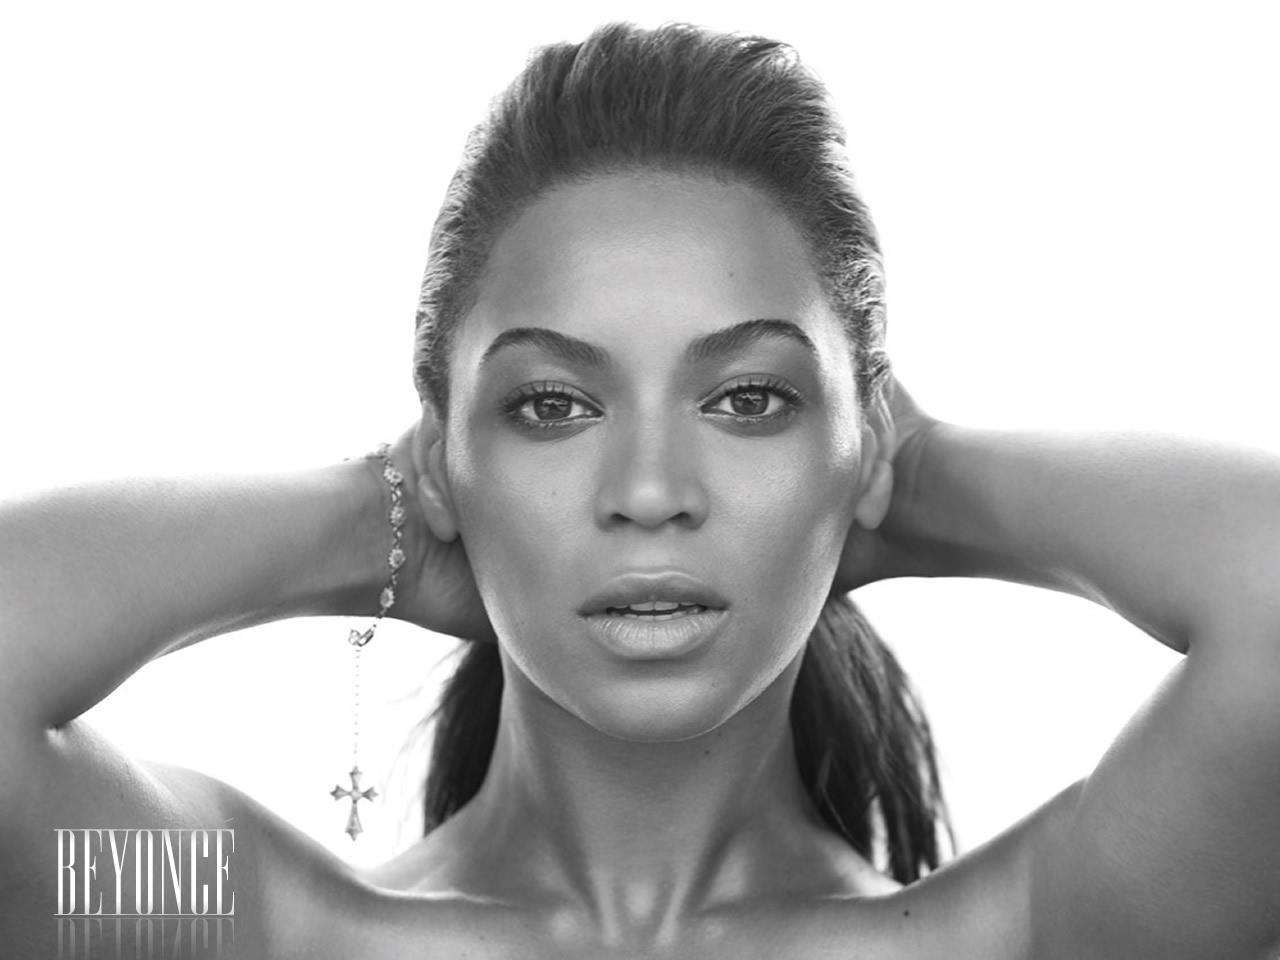 Am Beyonce Wallpaper